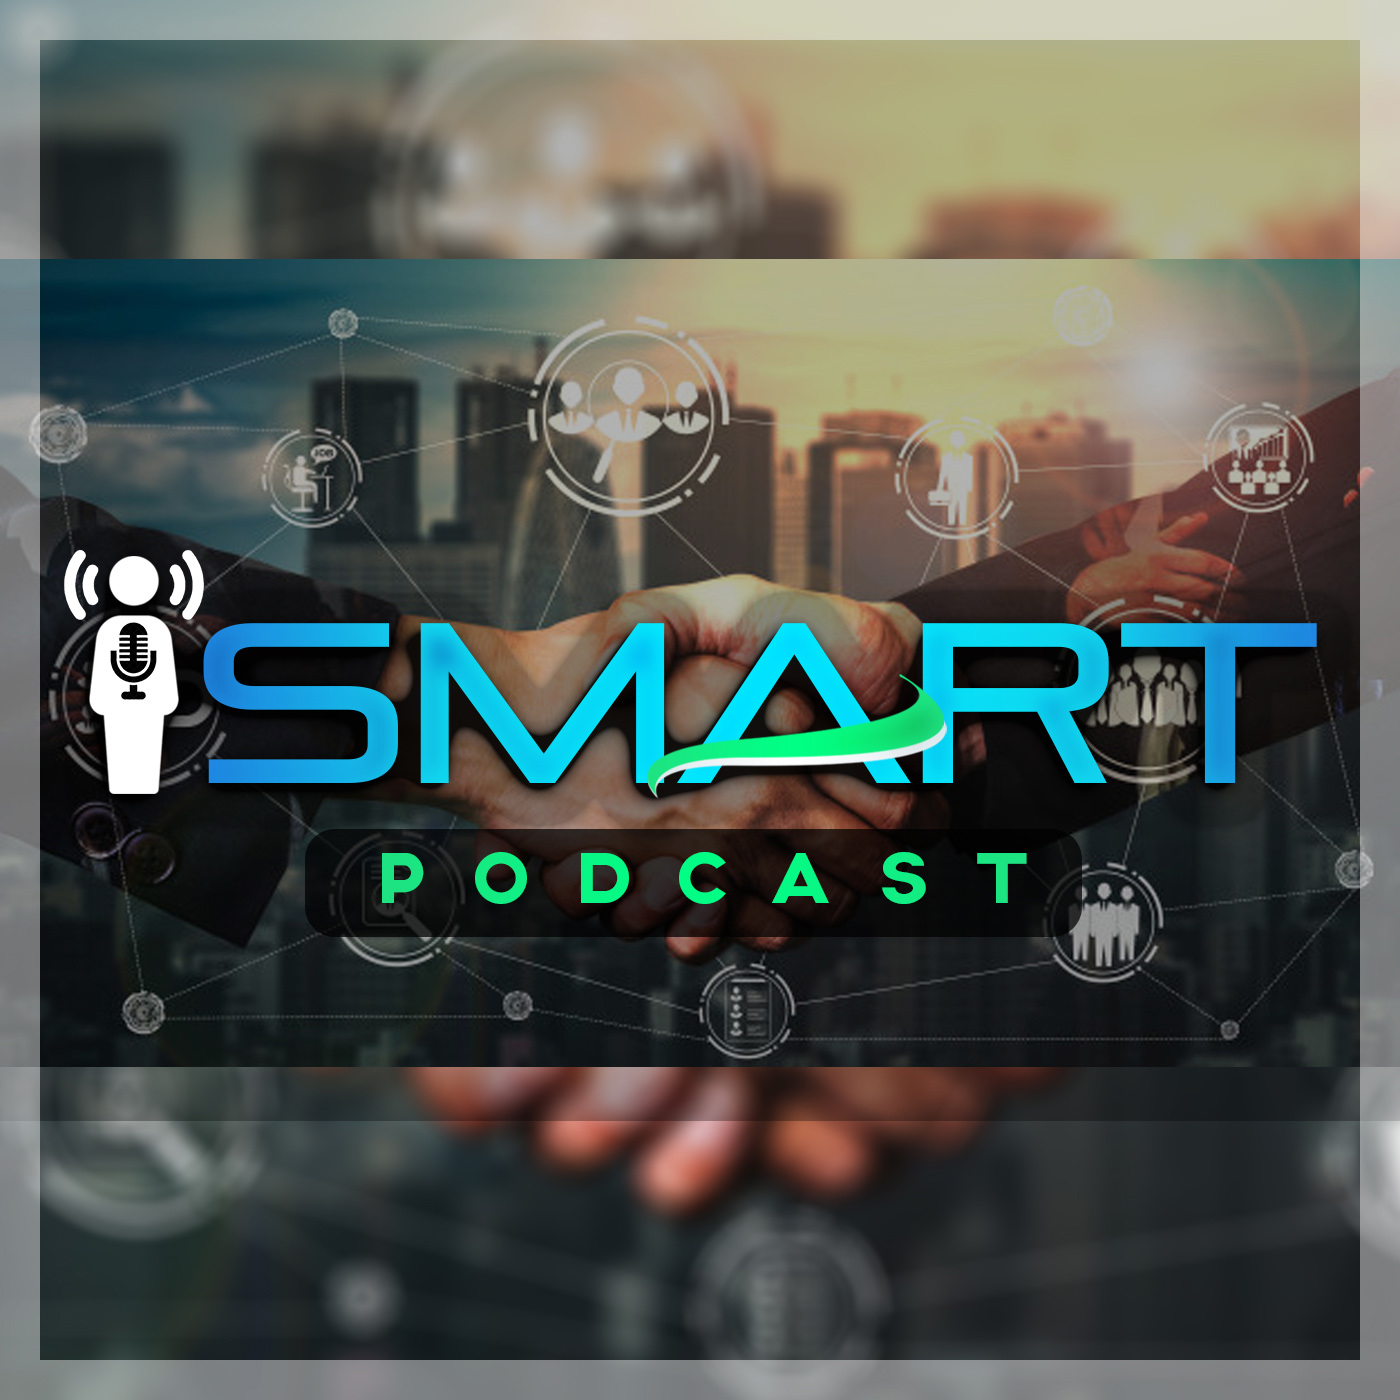 Artwork for podcast iSmart Podcast